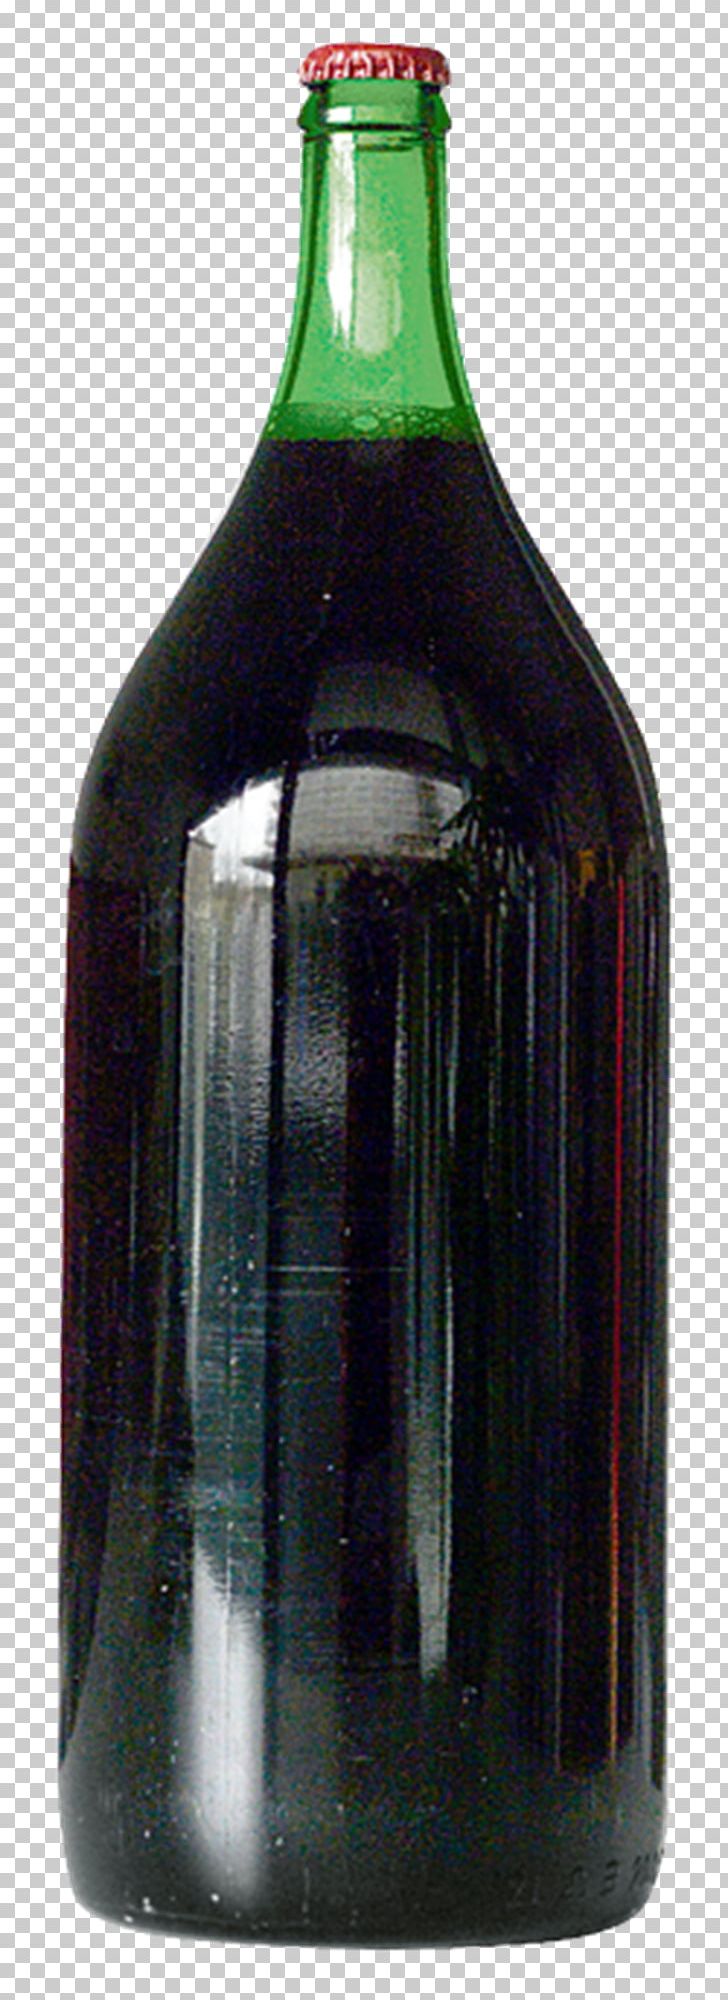 1985 Diethylene Glycol Wine Scandal Glass Bottle Liqueur PNG, Clipart, Austria, Beer, Beer Bottle, Bottle, Der Standard Free PNG Download